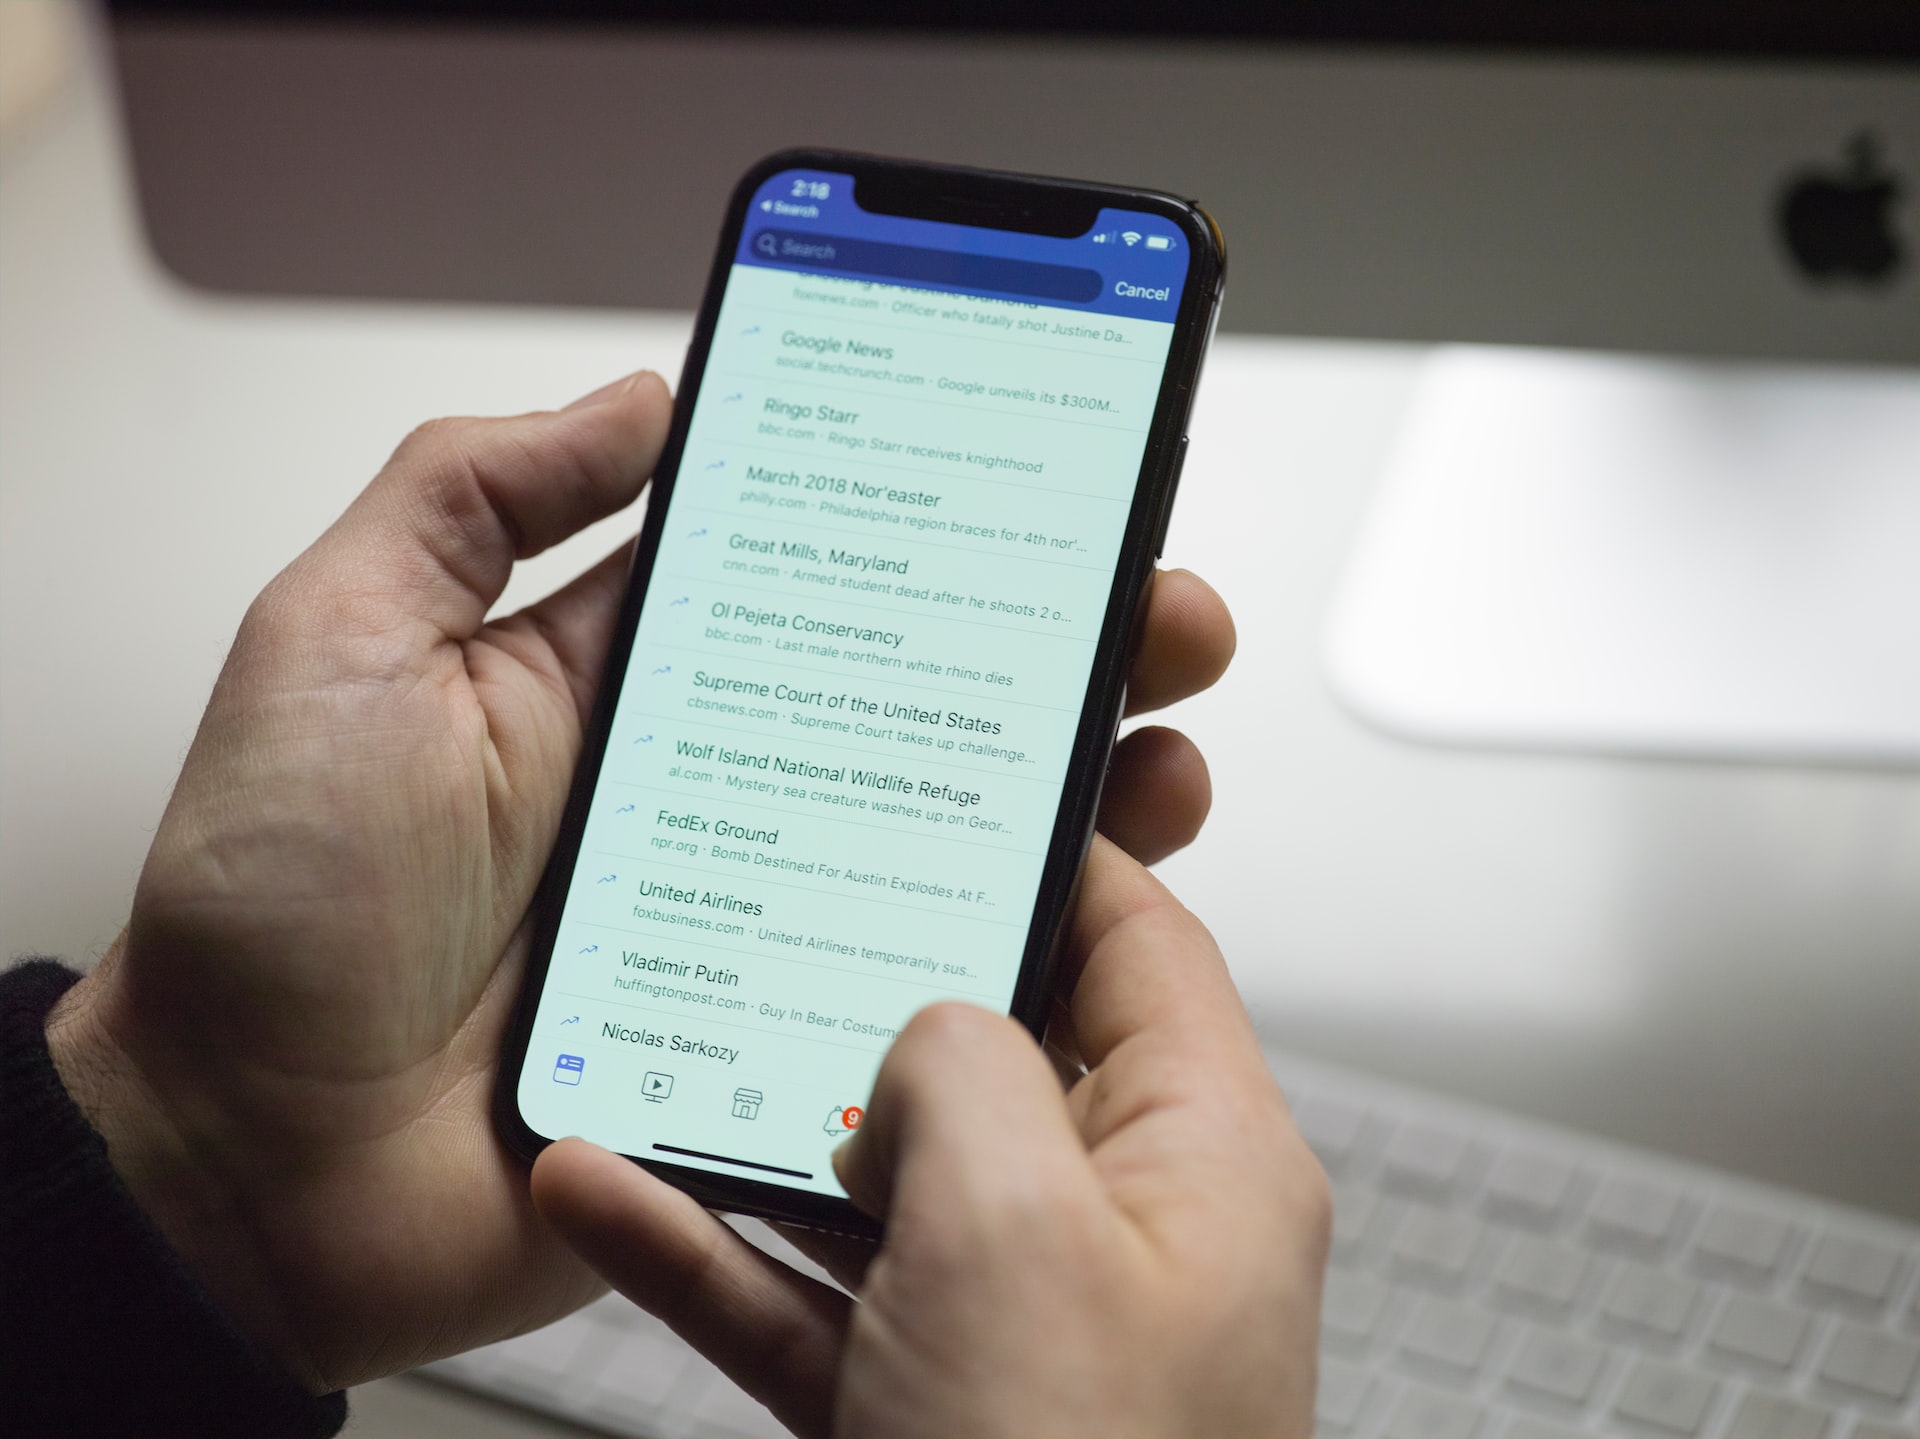 Imagem mostra um celular exibindo uma lista de notícias por uma rede social